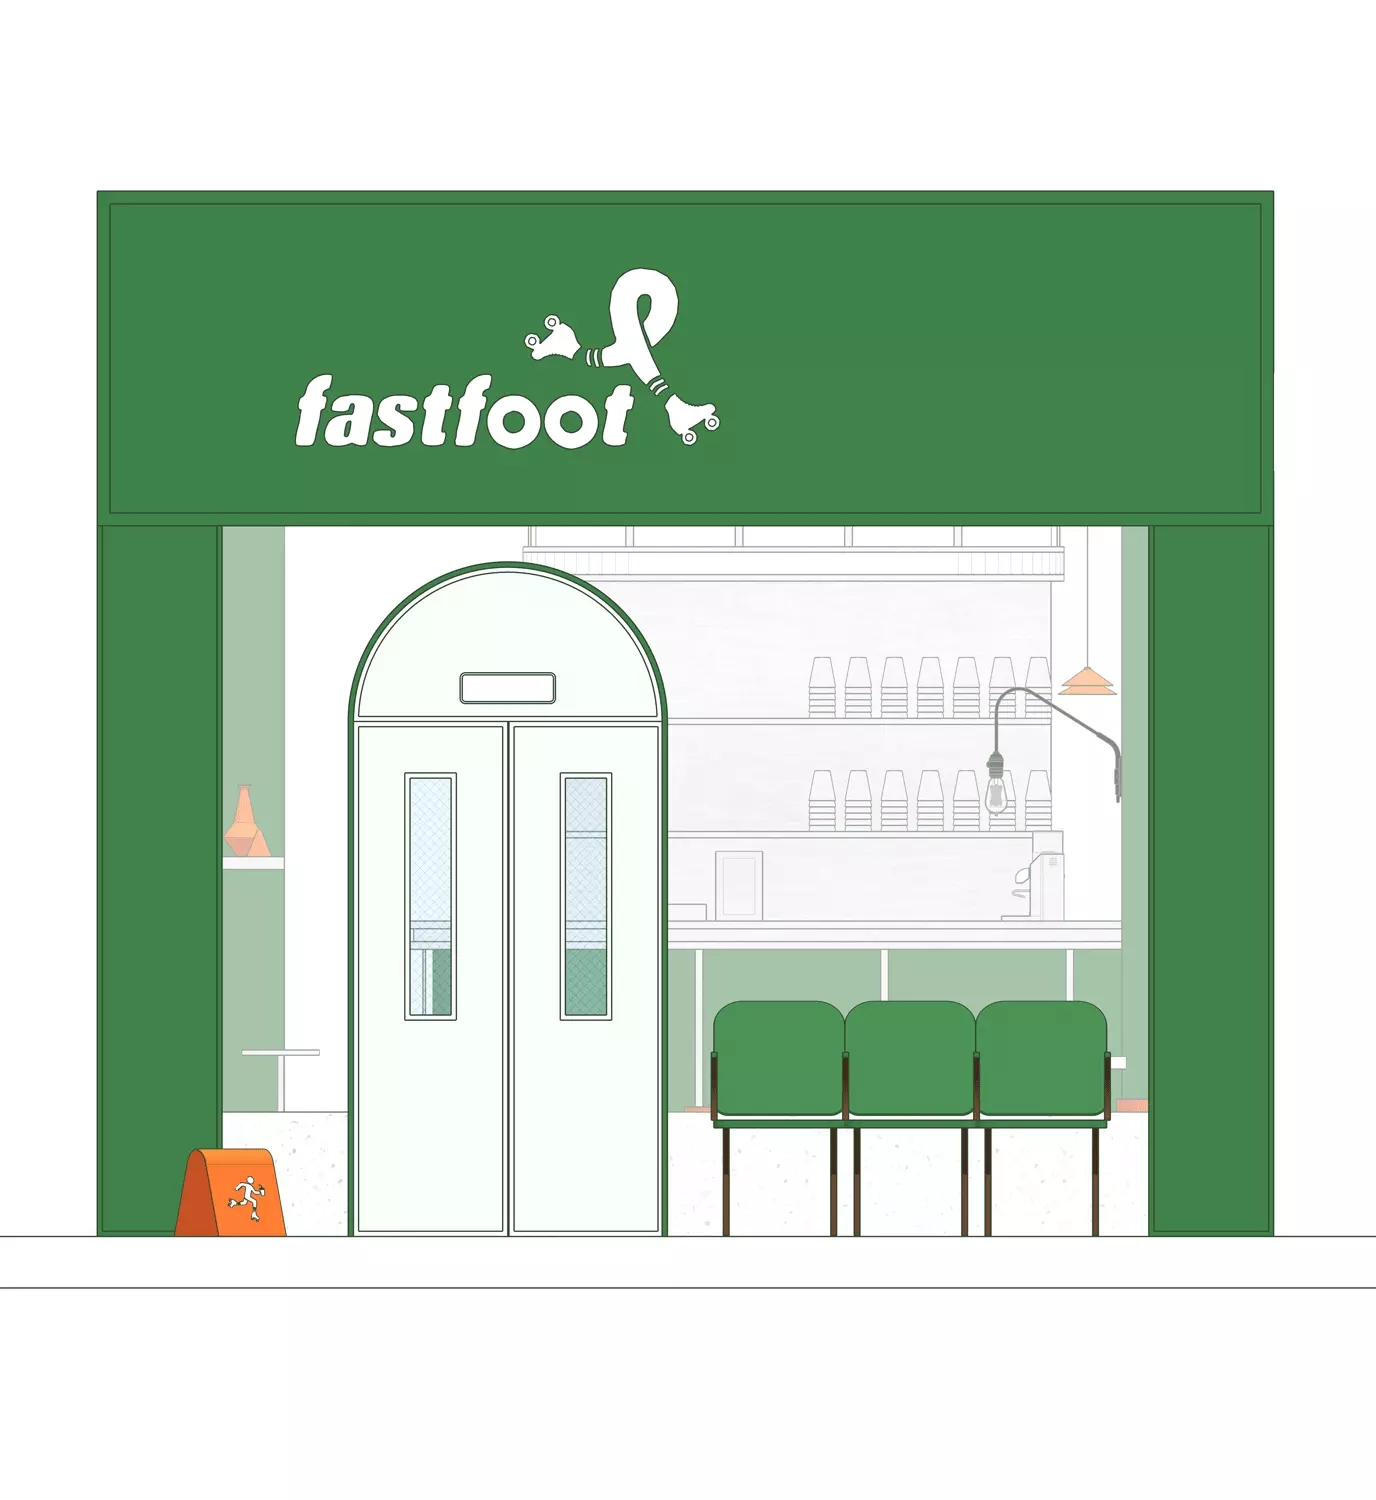 再叁食研设计急急脚啡公司FASTFOOT平面品牌再图标